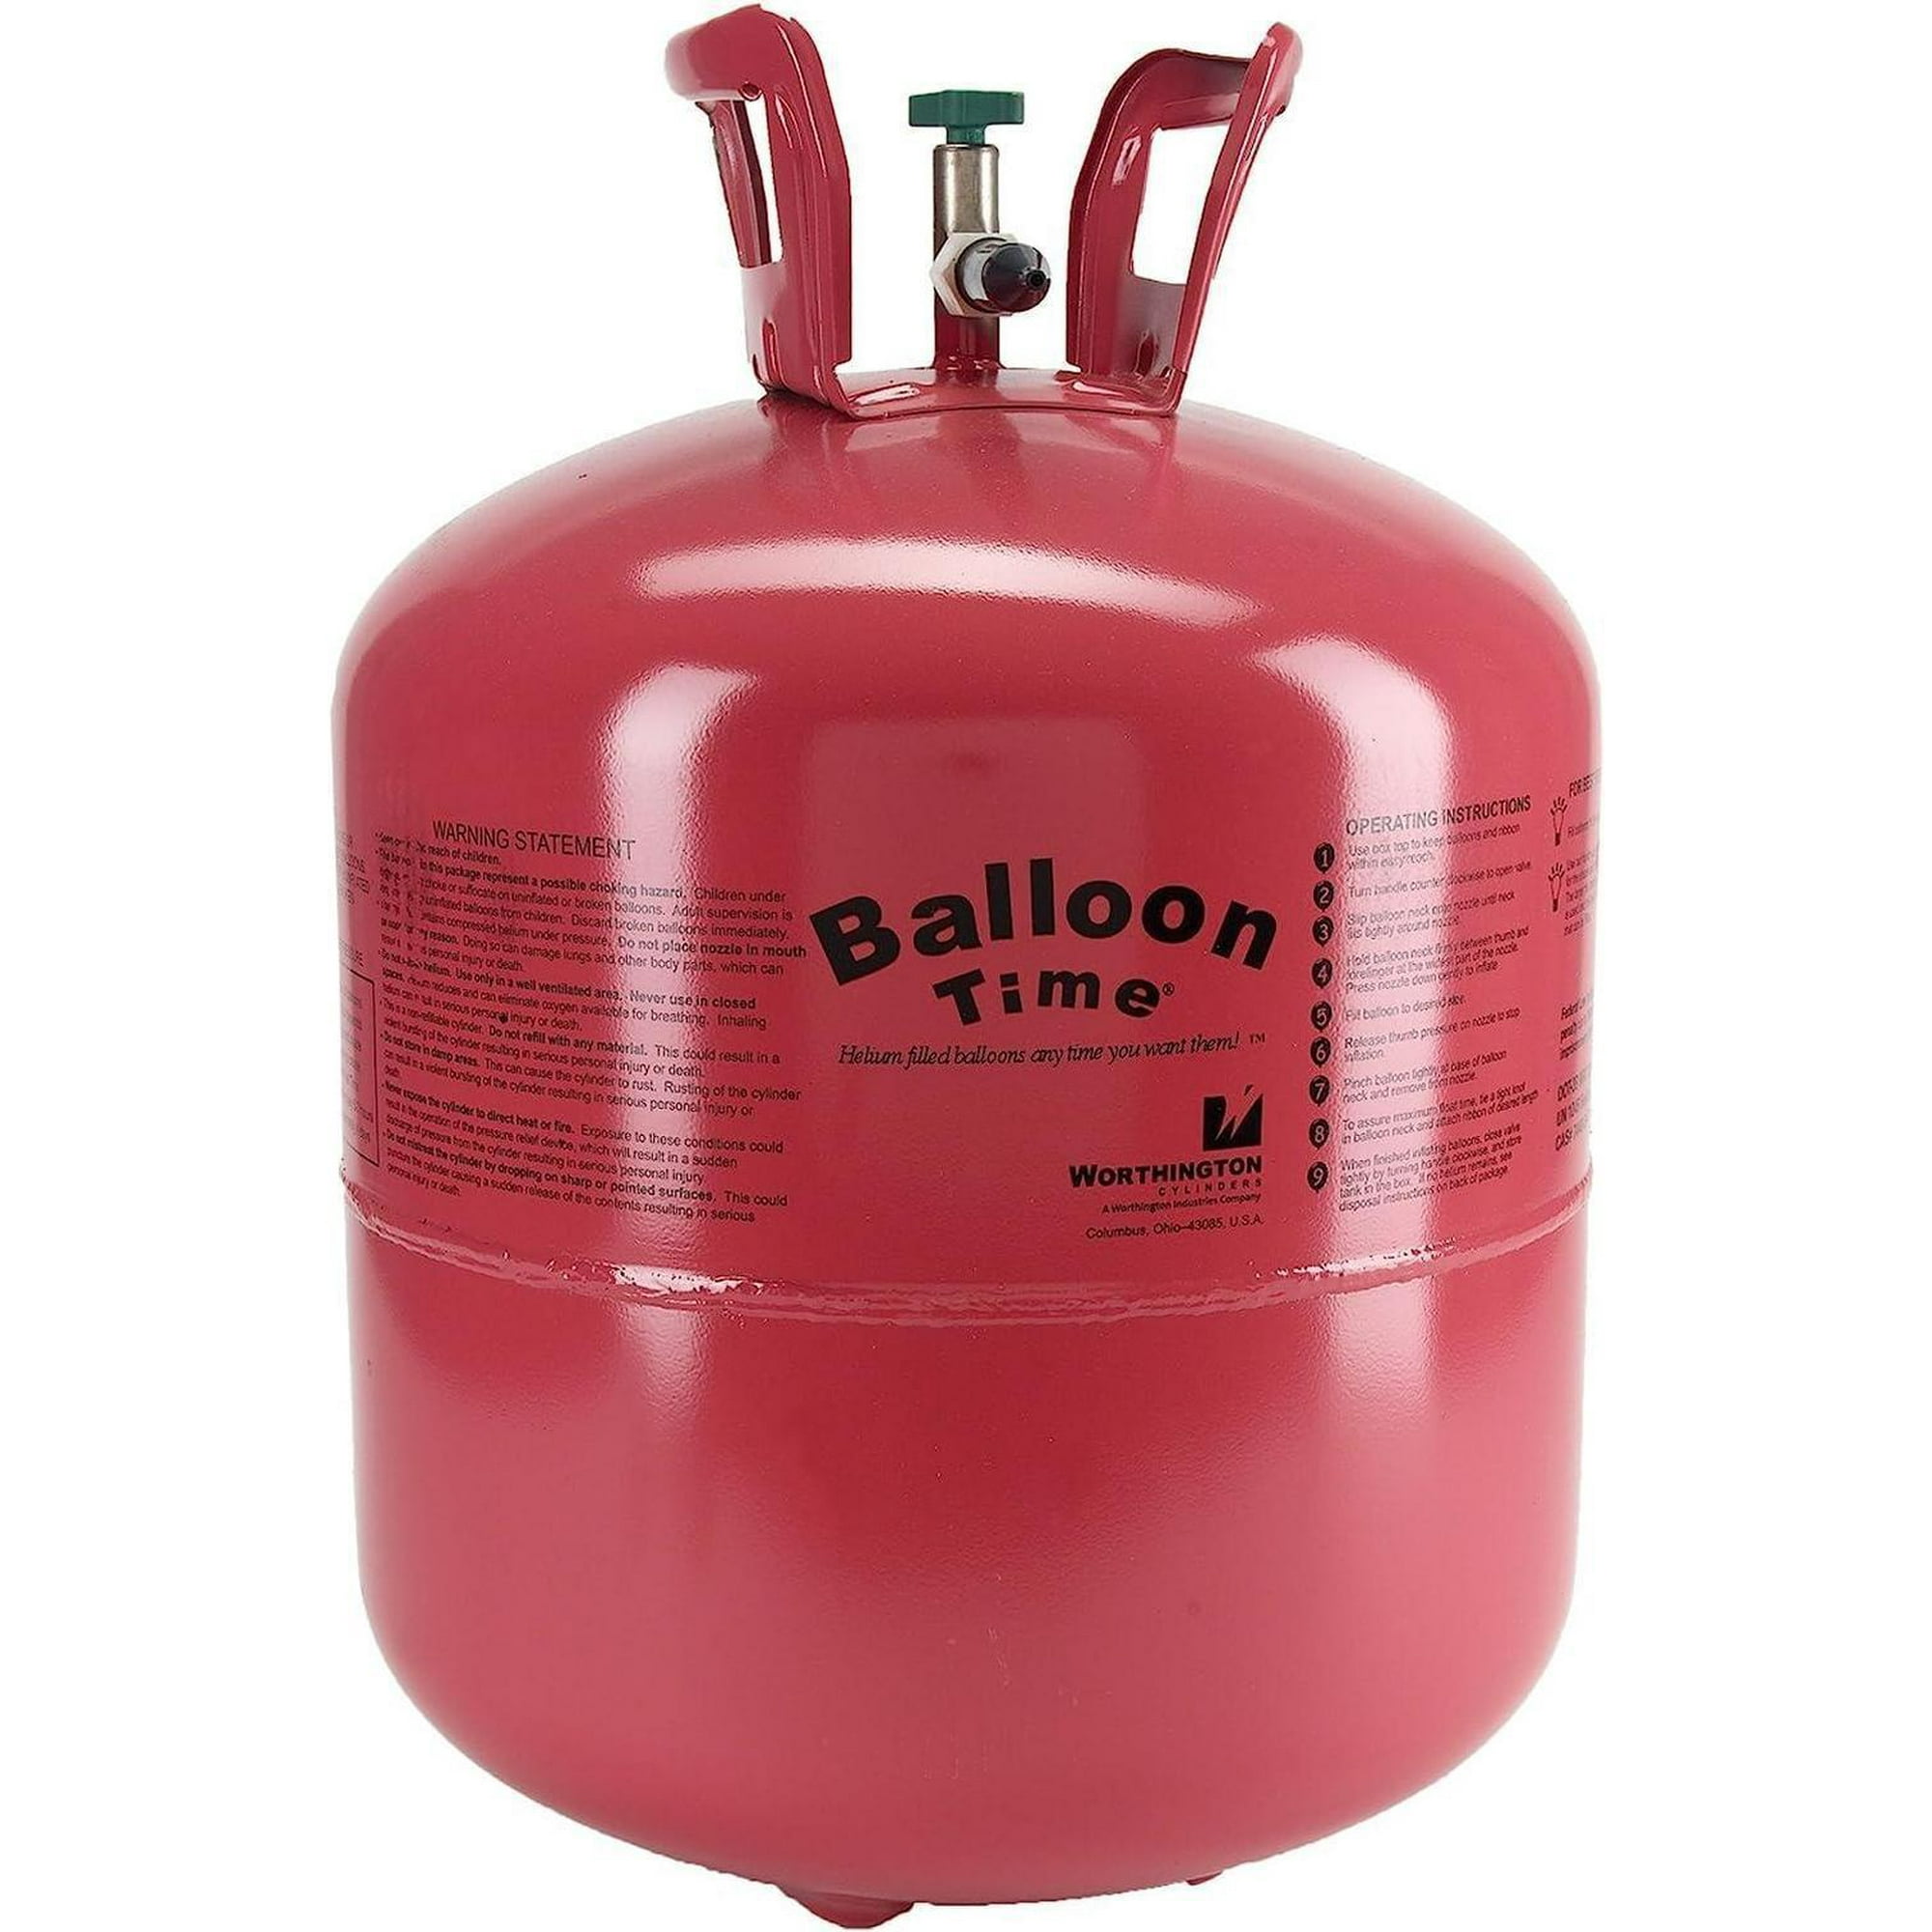 Botella helio desechable perfecto para hinchar los globos en casa